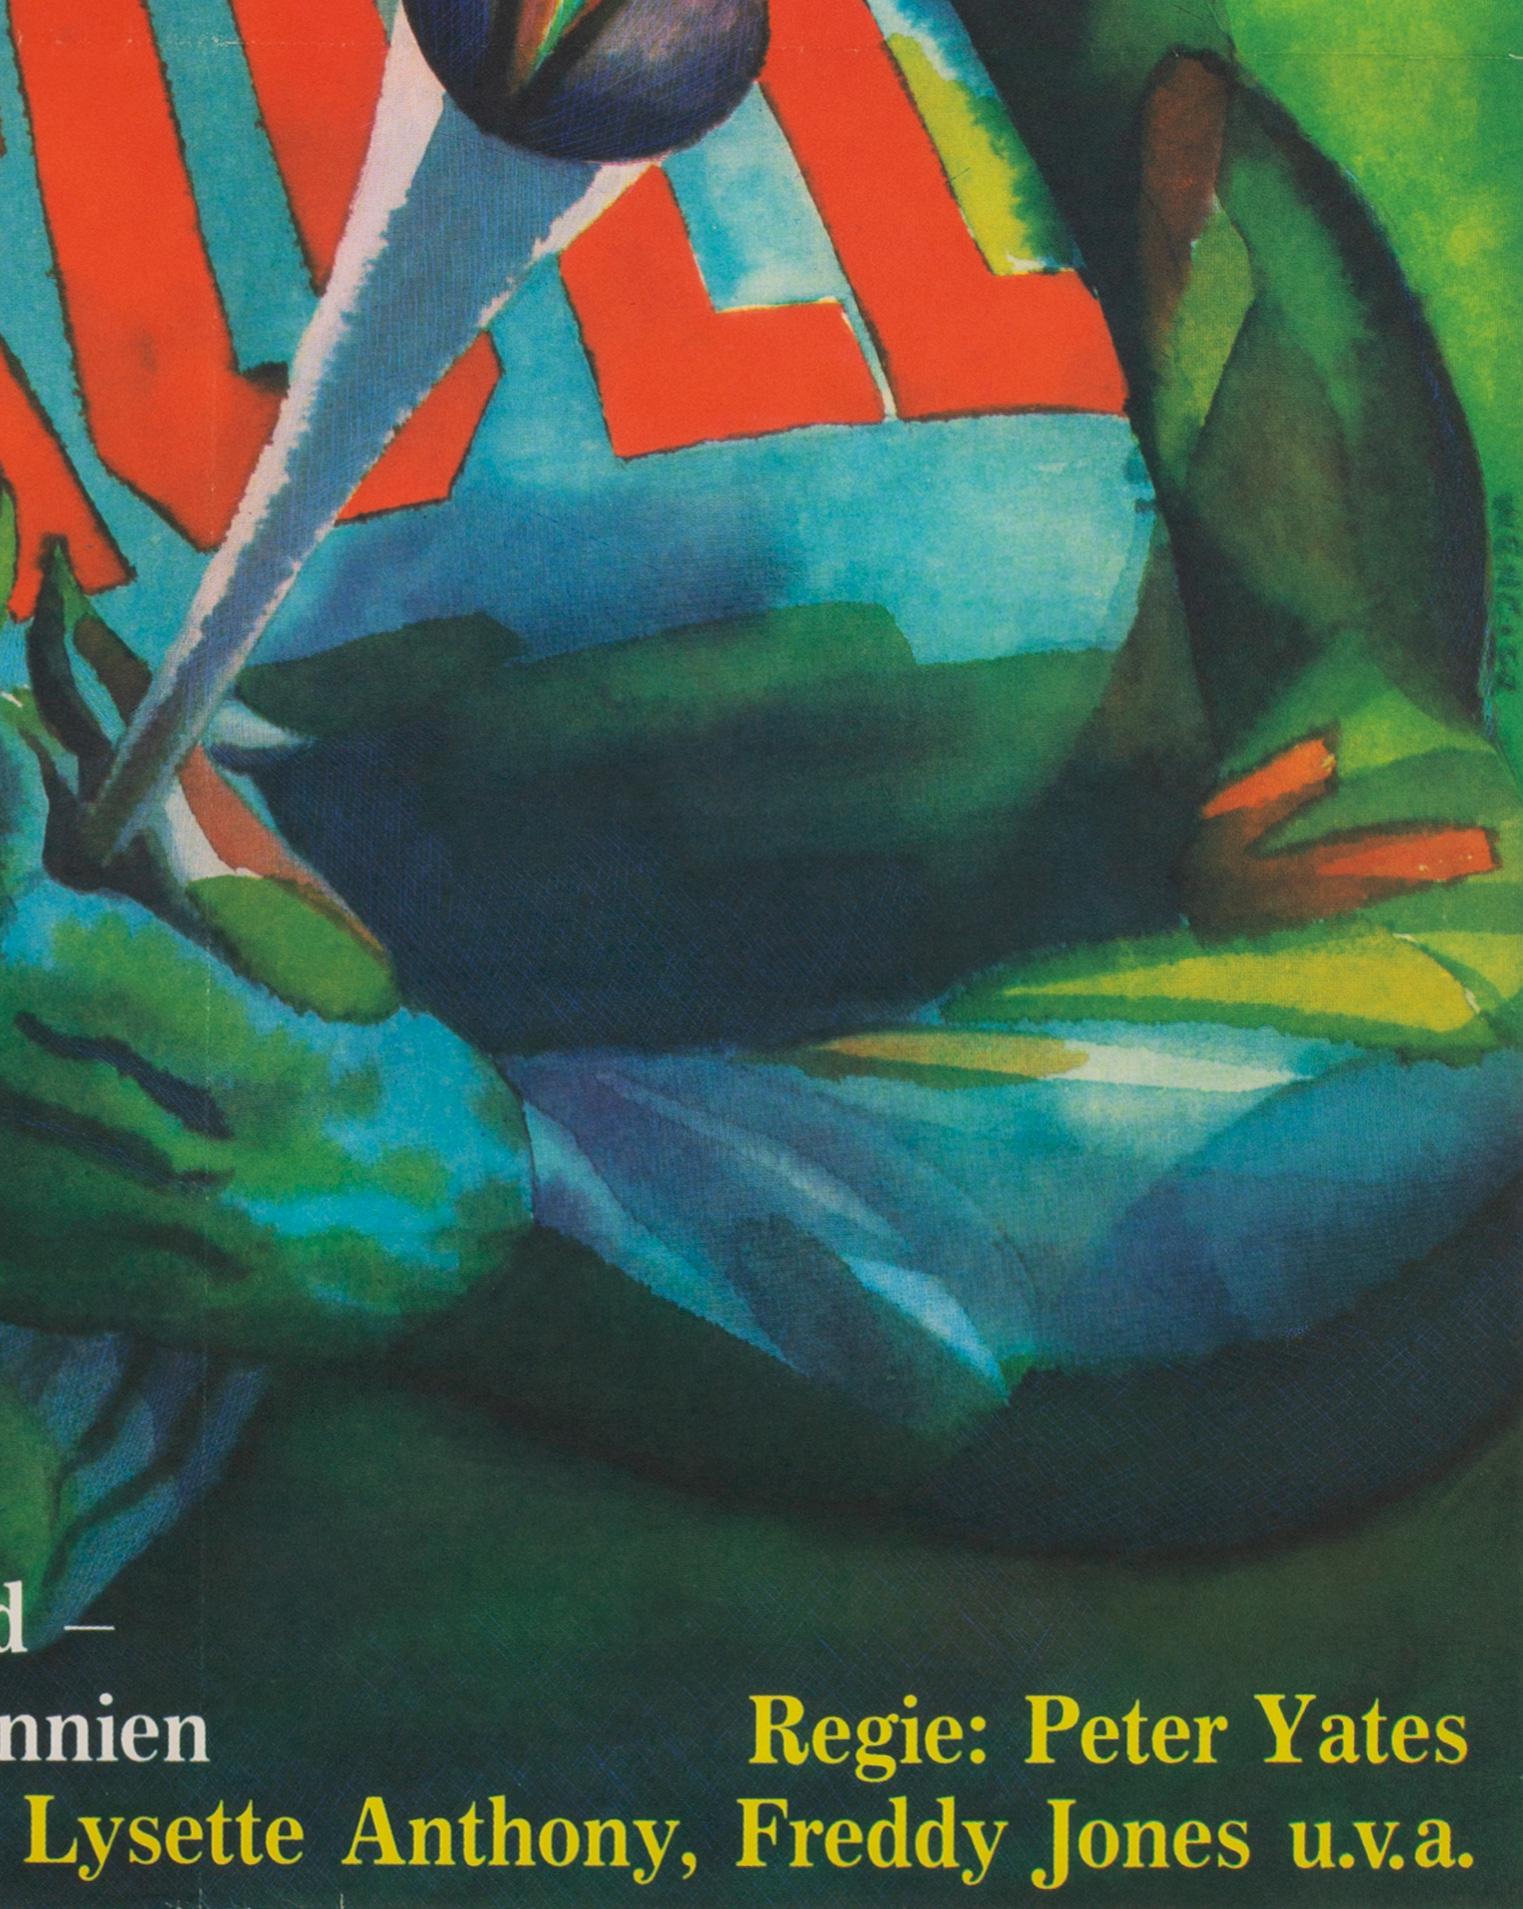 Krull 1985 East German Film Poster, Wengler 1